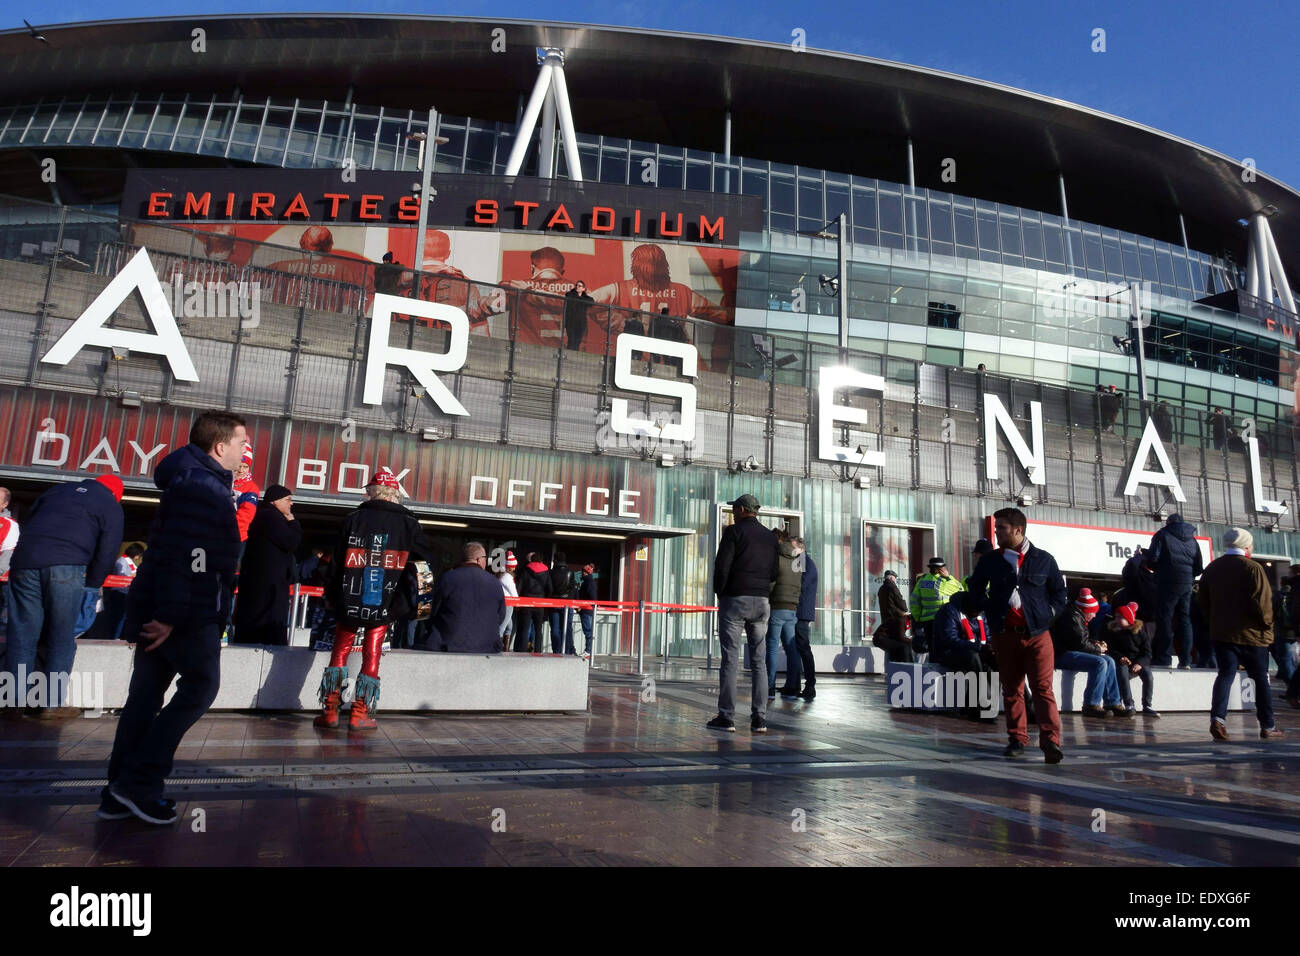 Spieltag bei Arsenal FC Emirates Stadium, London - Fans anreisen für Spiel gegen Stoke City Stockfoto